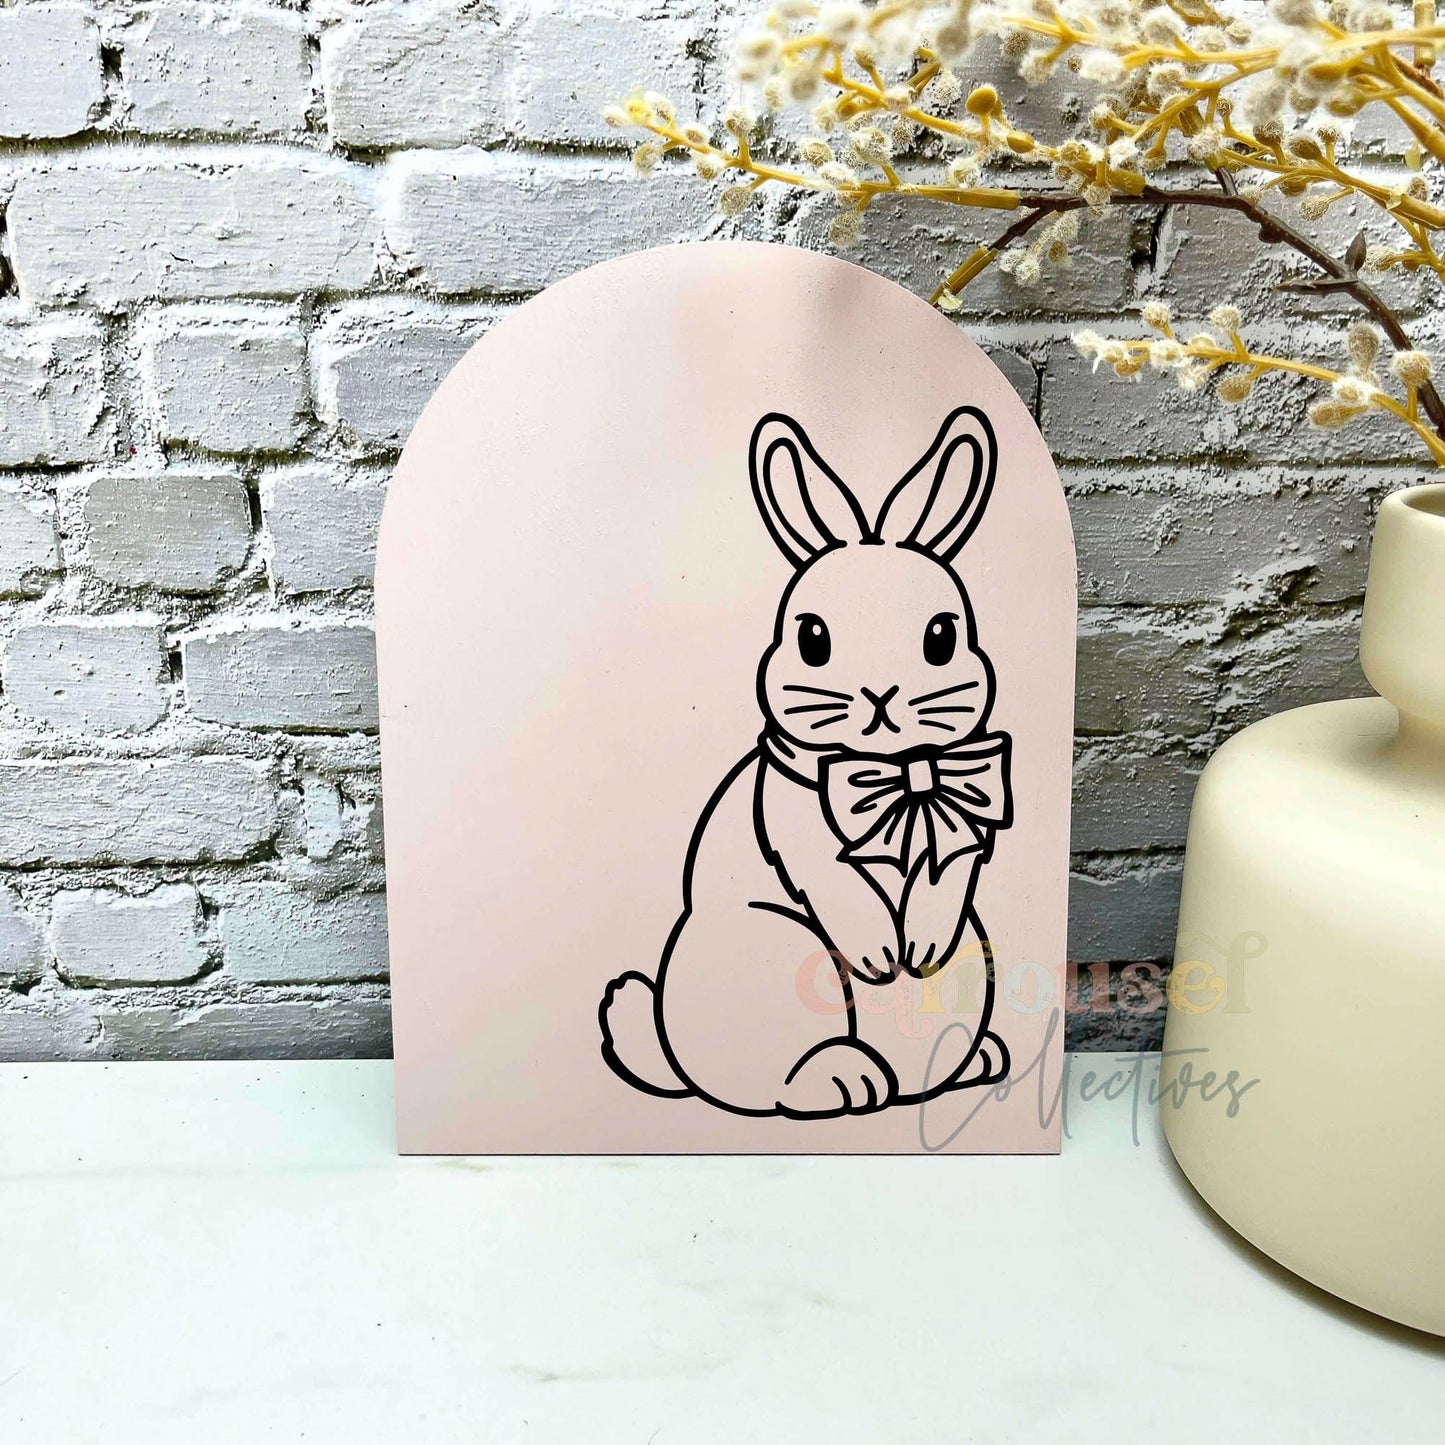 Bow tie Boy Bunny line art acrylic sign, acrylic decor sign, decorative decor